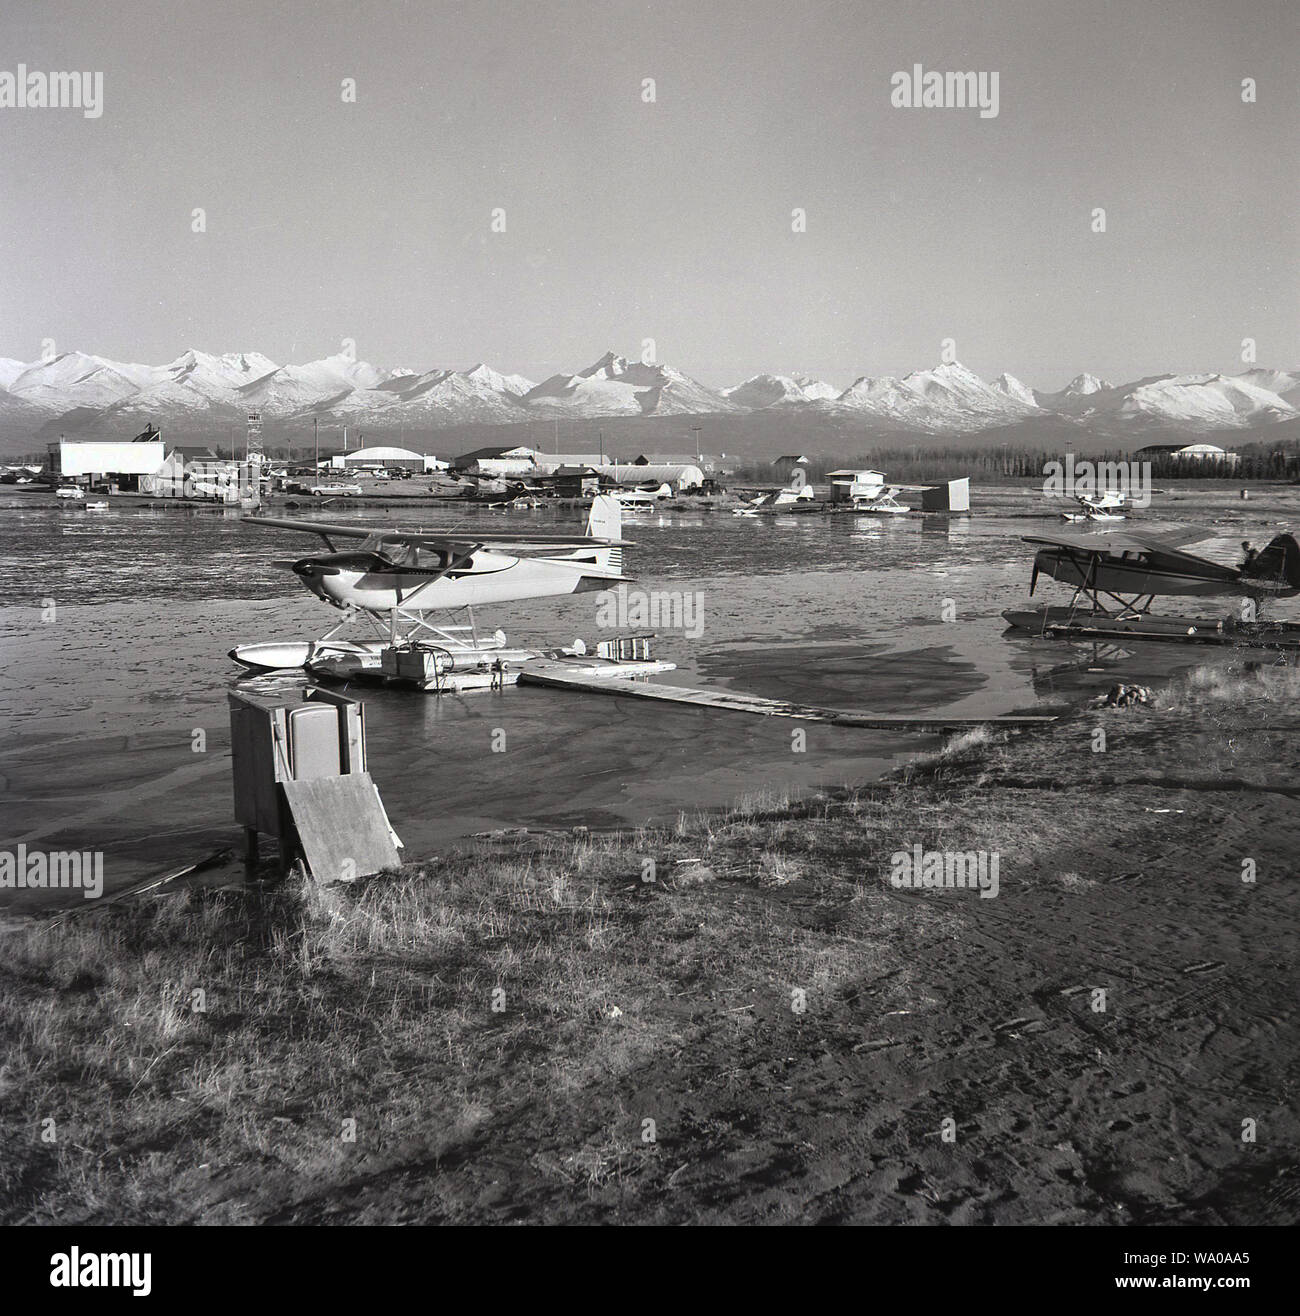 Années 1950, historiques, les hydravions au lac des Bois à côté de l'aéroport de Anchorage, Alaska, USA avec les montagnes Chugach en arrière-plan. Banque D'Images